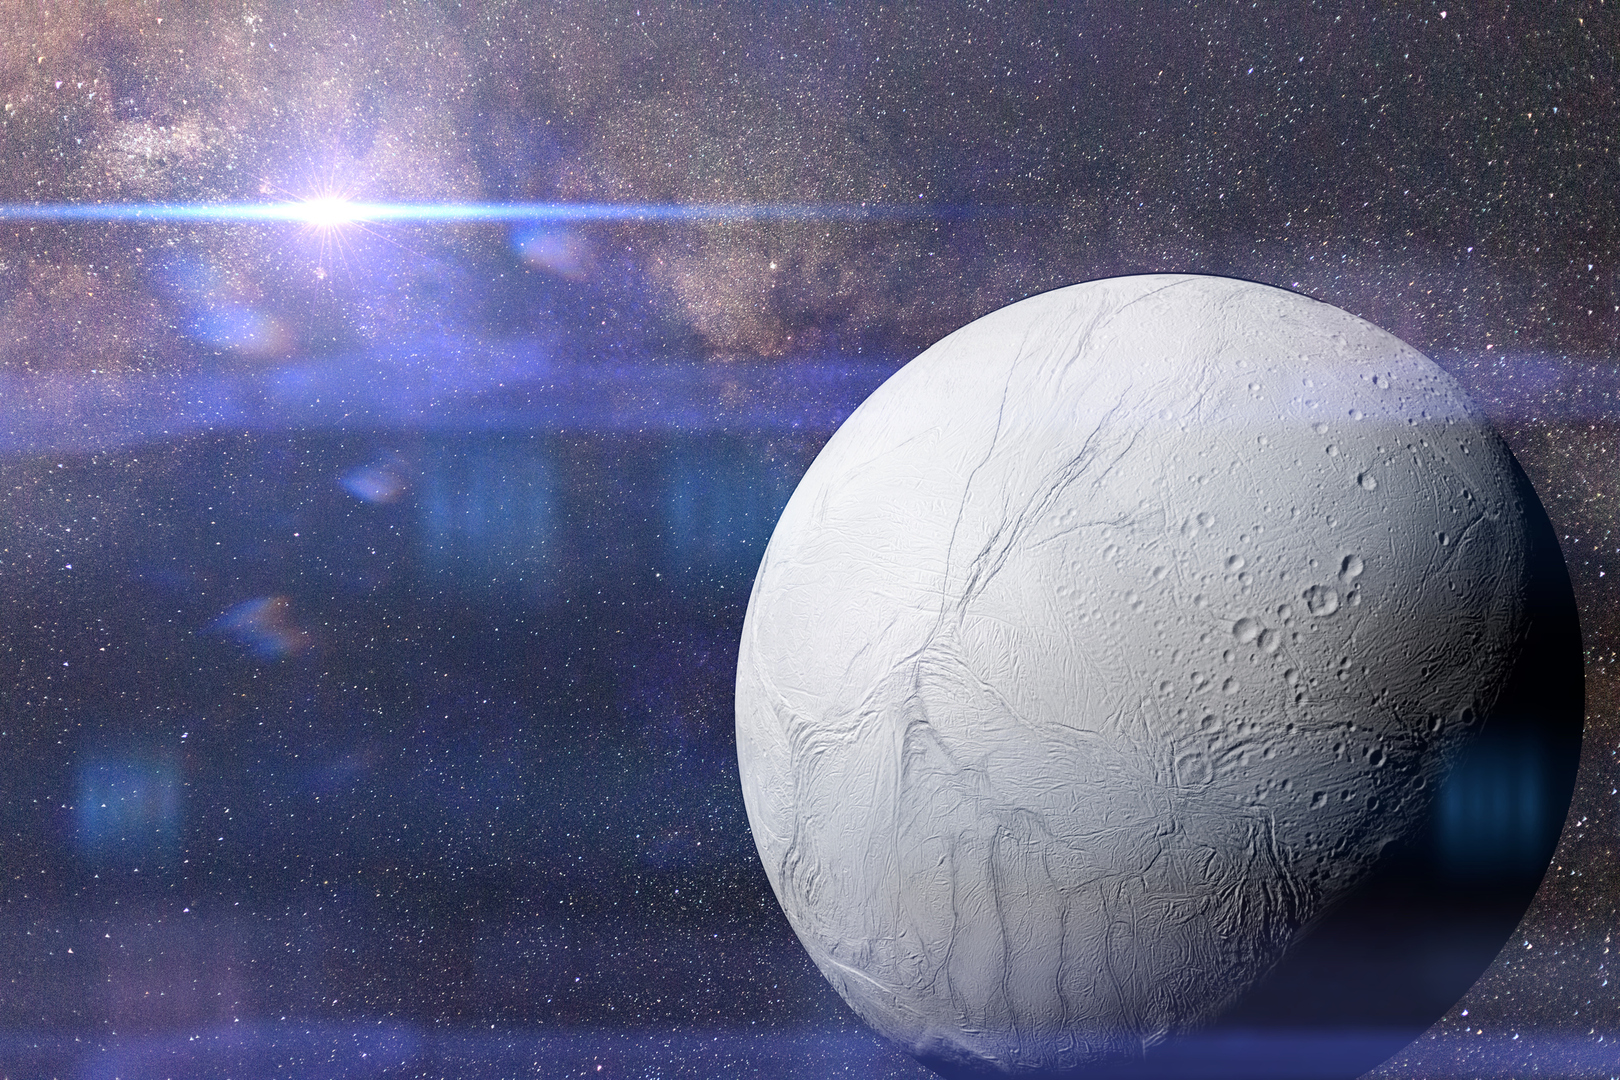 العثور على إحدى لبنات الحياة الأساسية لأول مرة خارج الأرض - في قمر زحل، إنسيلادوس